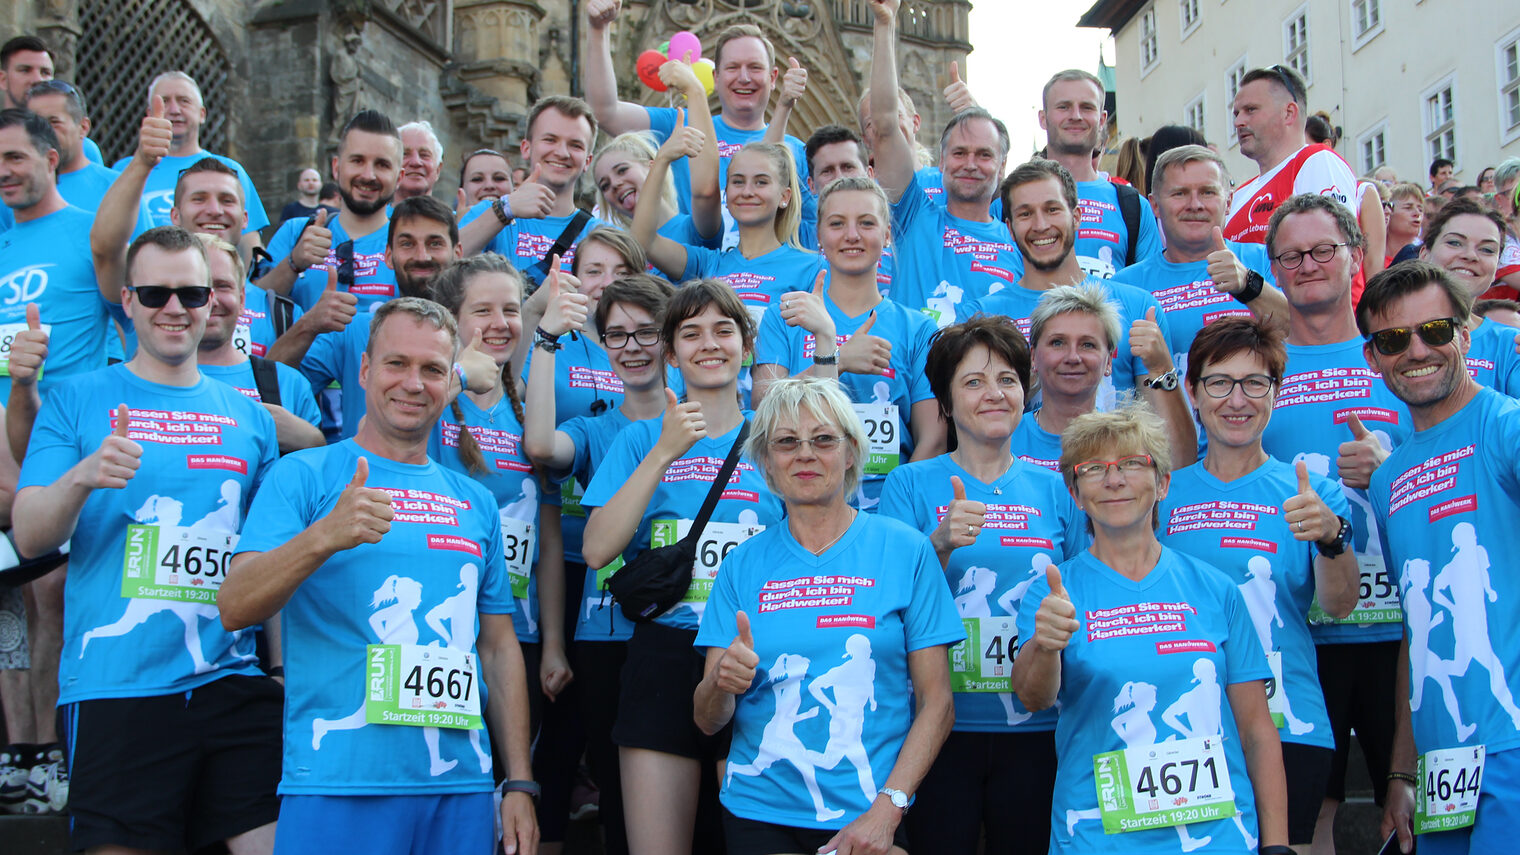 45 Läuferinnen und Läufer gingen am 6. Juni für das ¿Team Handwerk¿ beim RUN-Unternehmenslauf in Erfurt an den Start